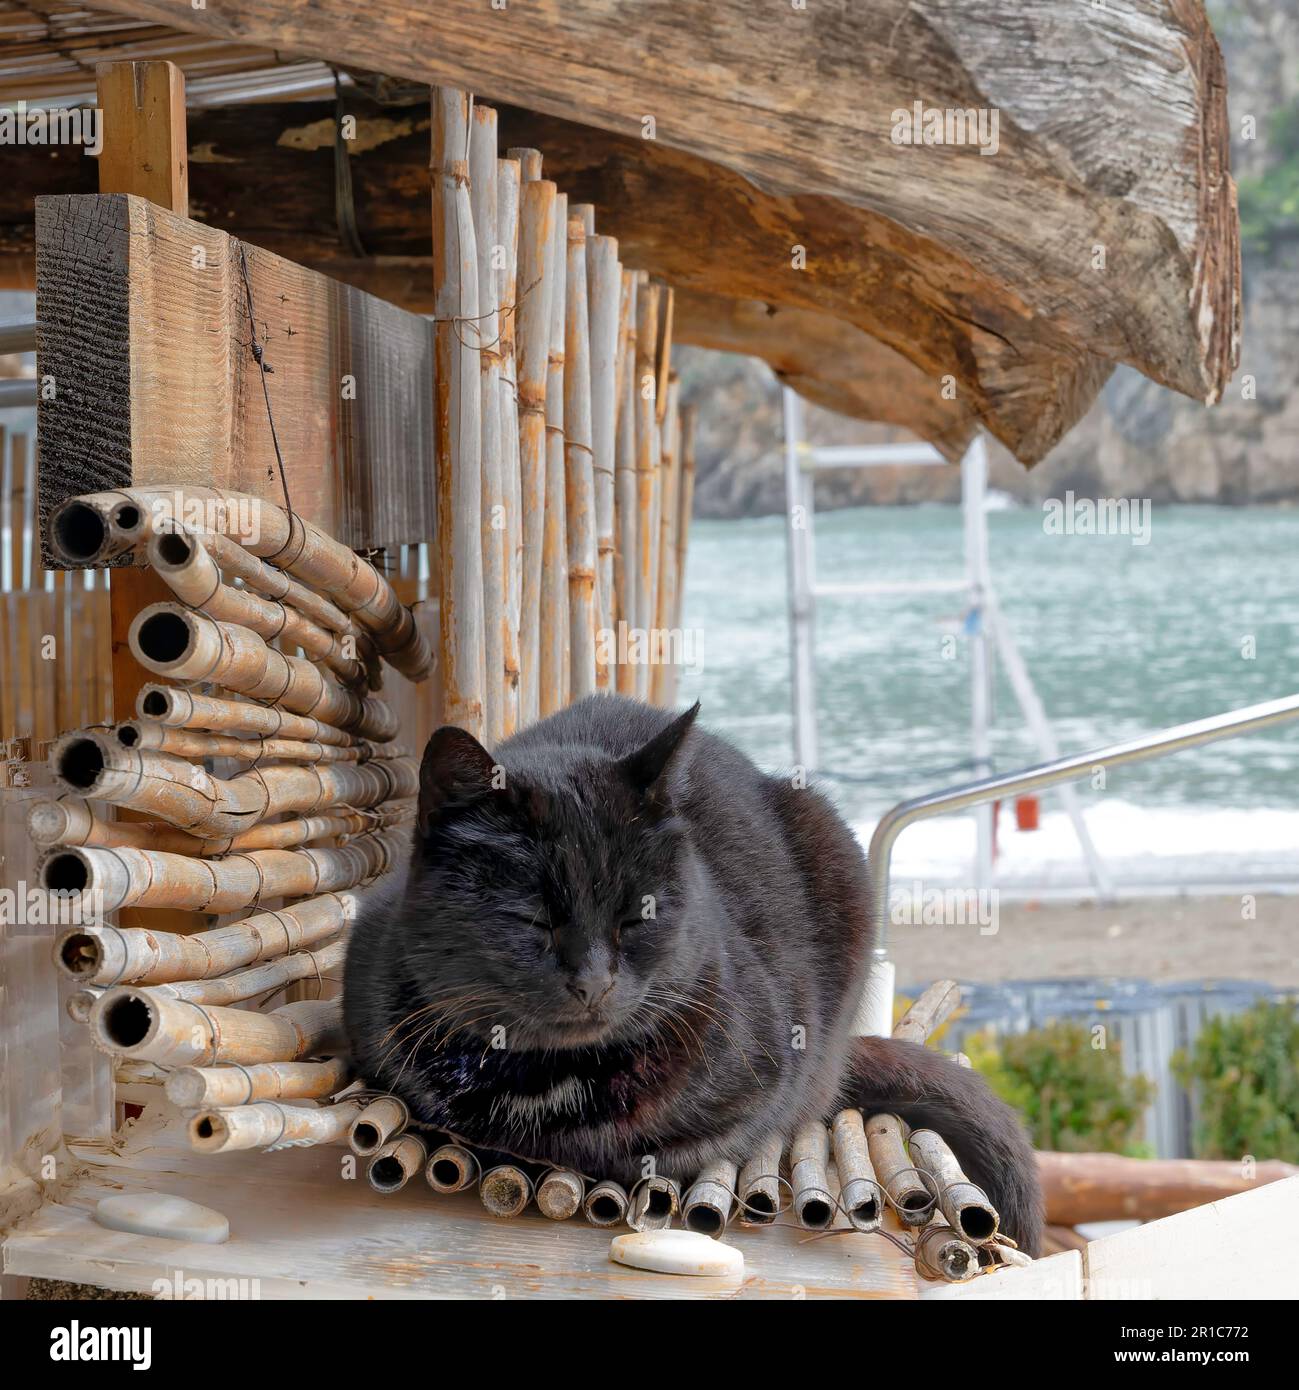 Un chat sauvage repose sur un lit en bambou, Campanie, Italie Banque D'Images